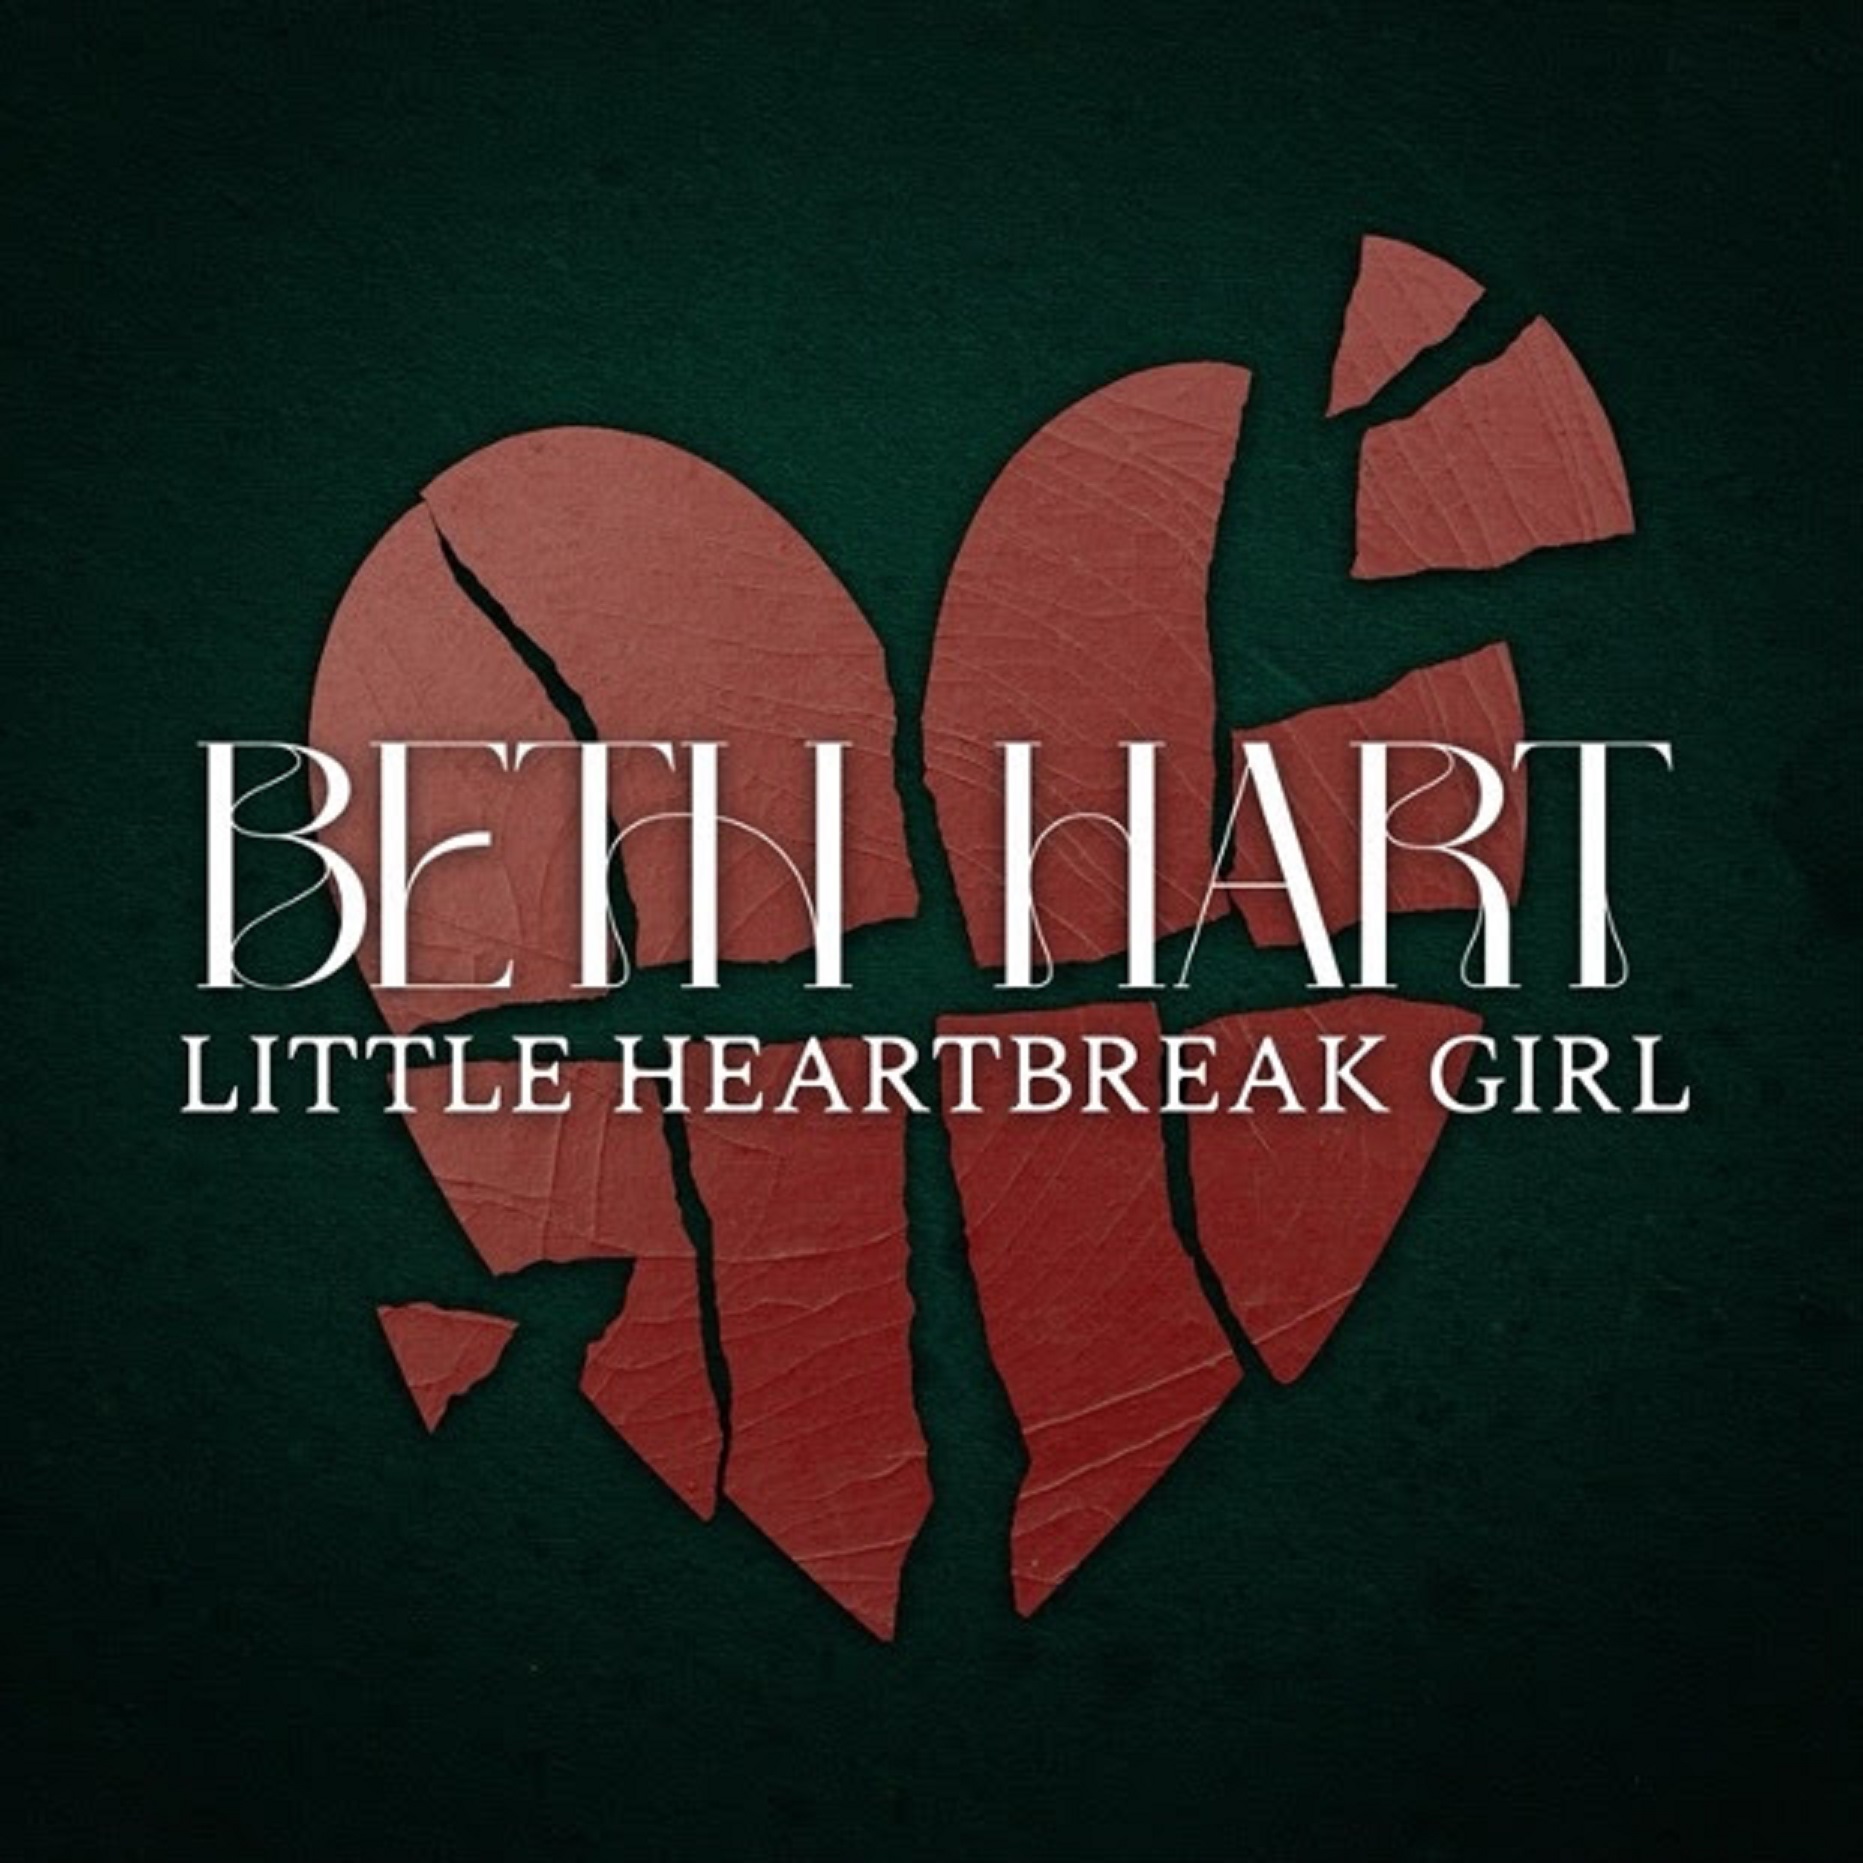 Beth Hart Surprises Fans with Heartfelt New Single "Little Heartbreak Girl"